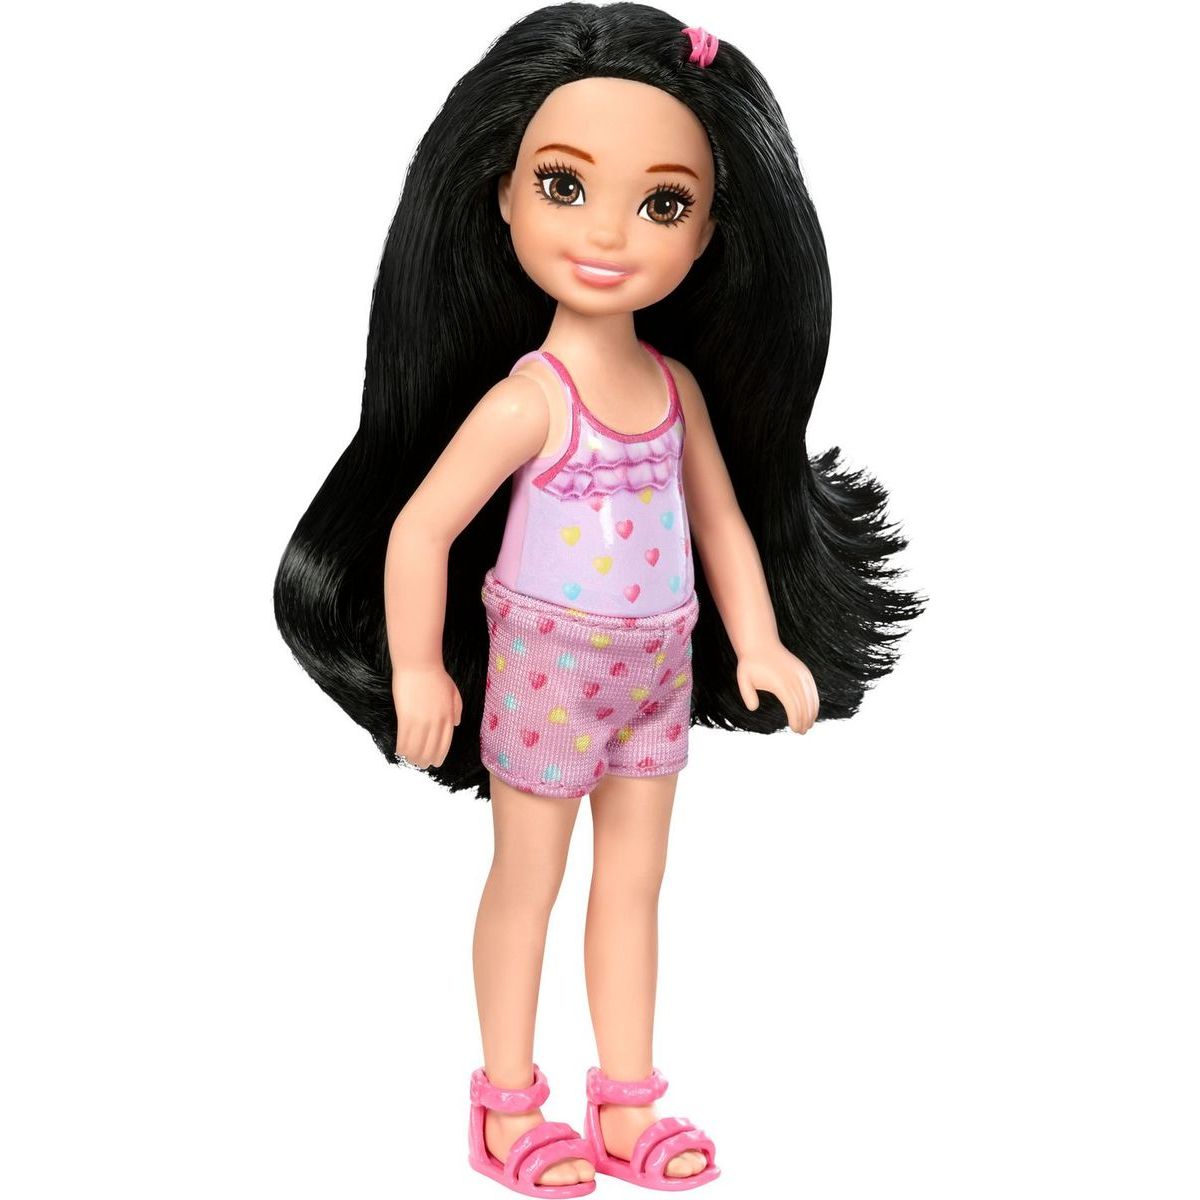 Mattel Barbie Chelsea DWJ37